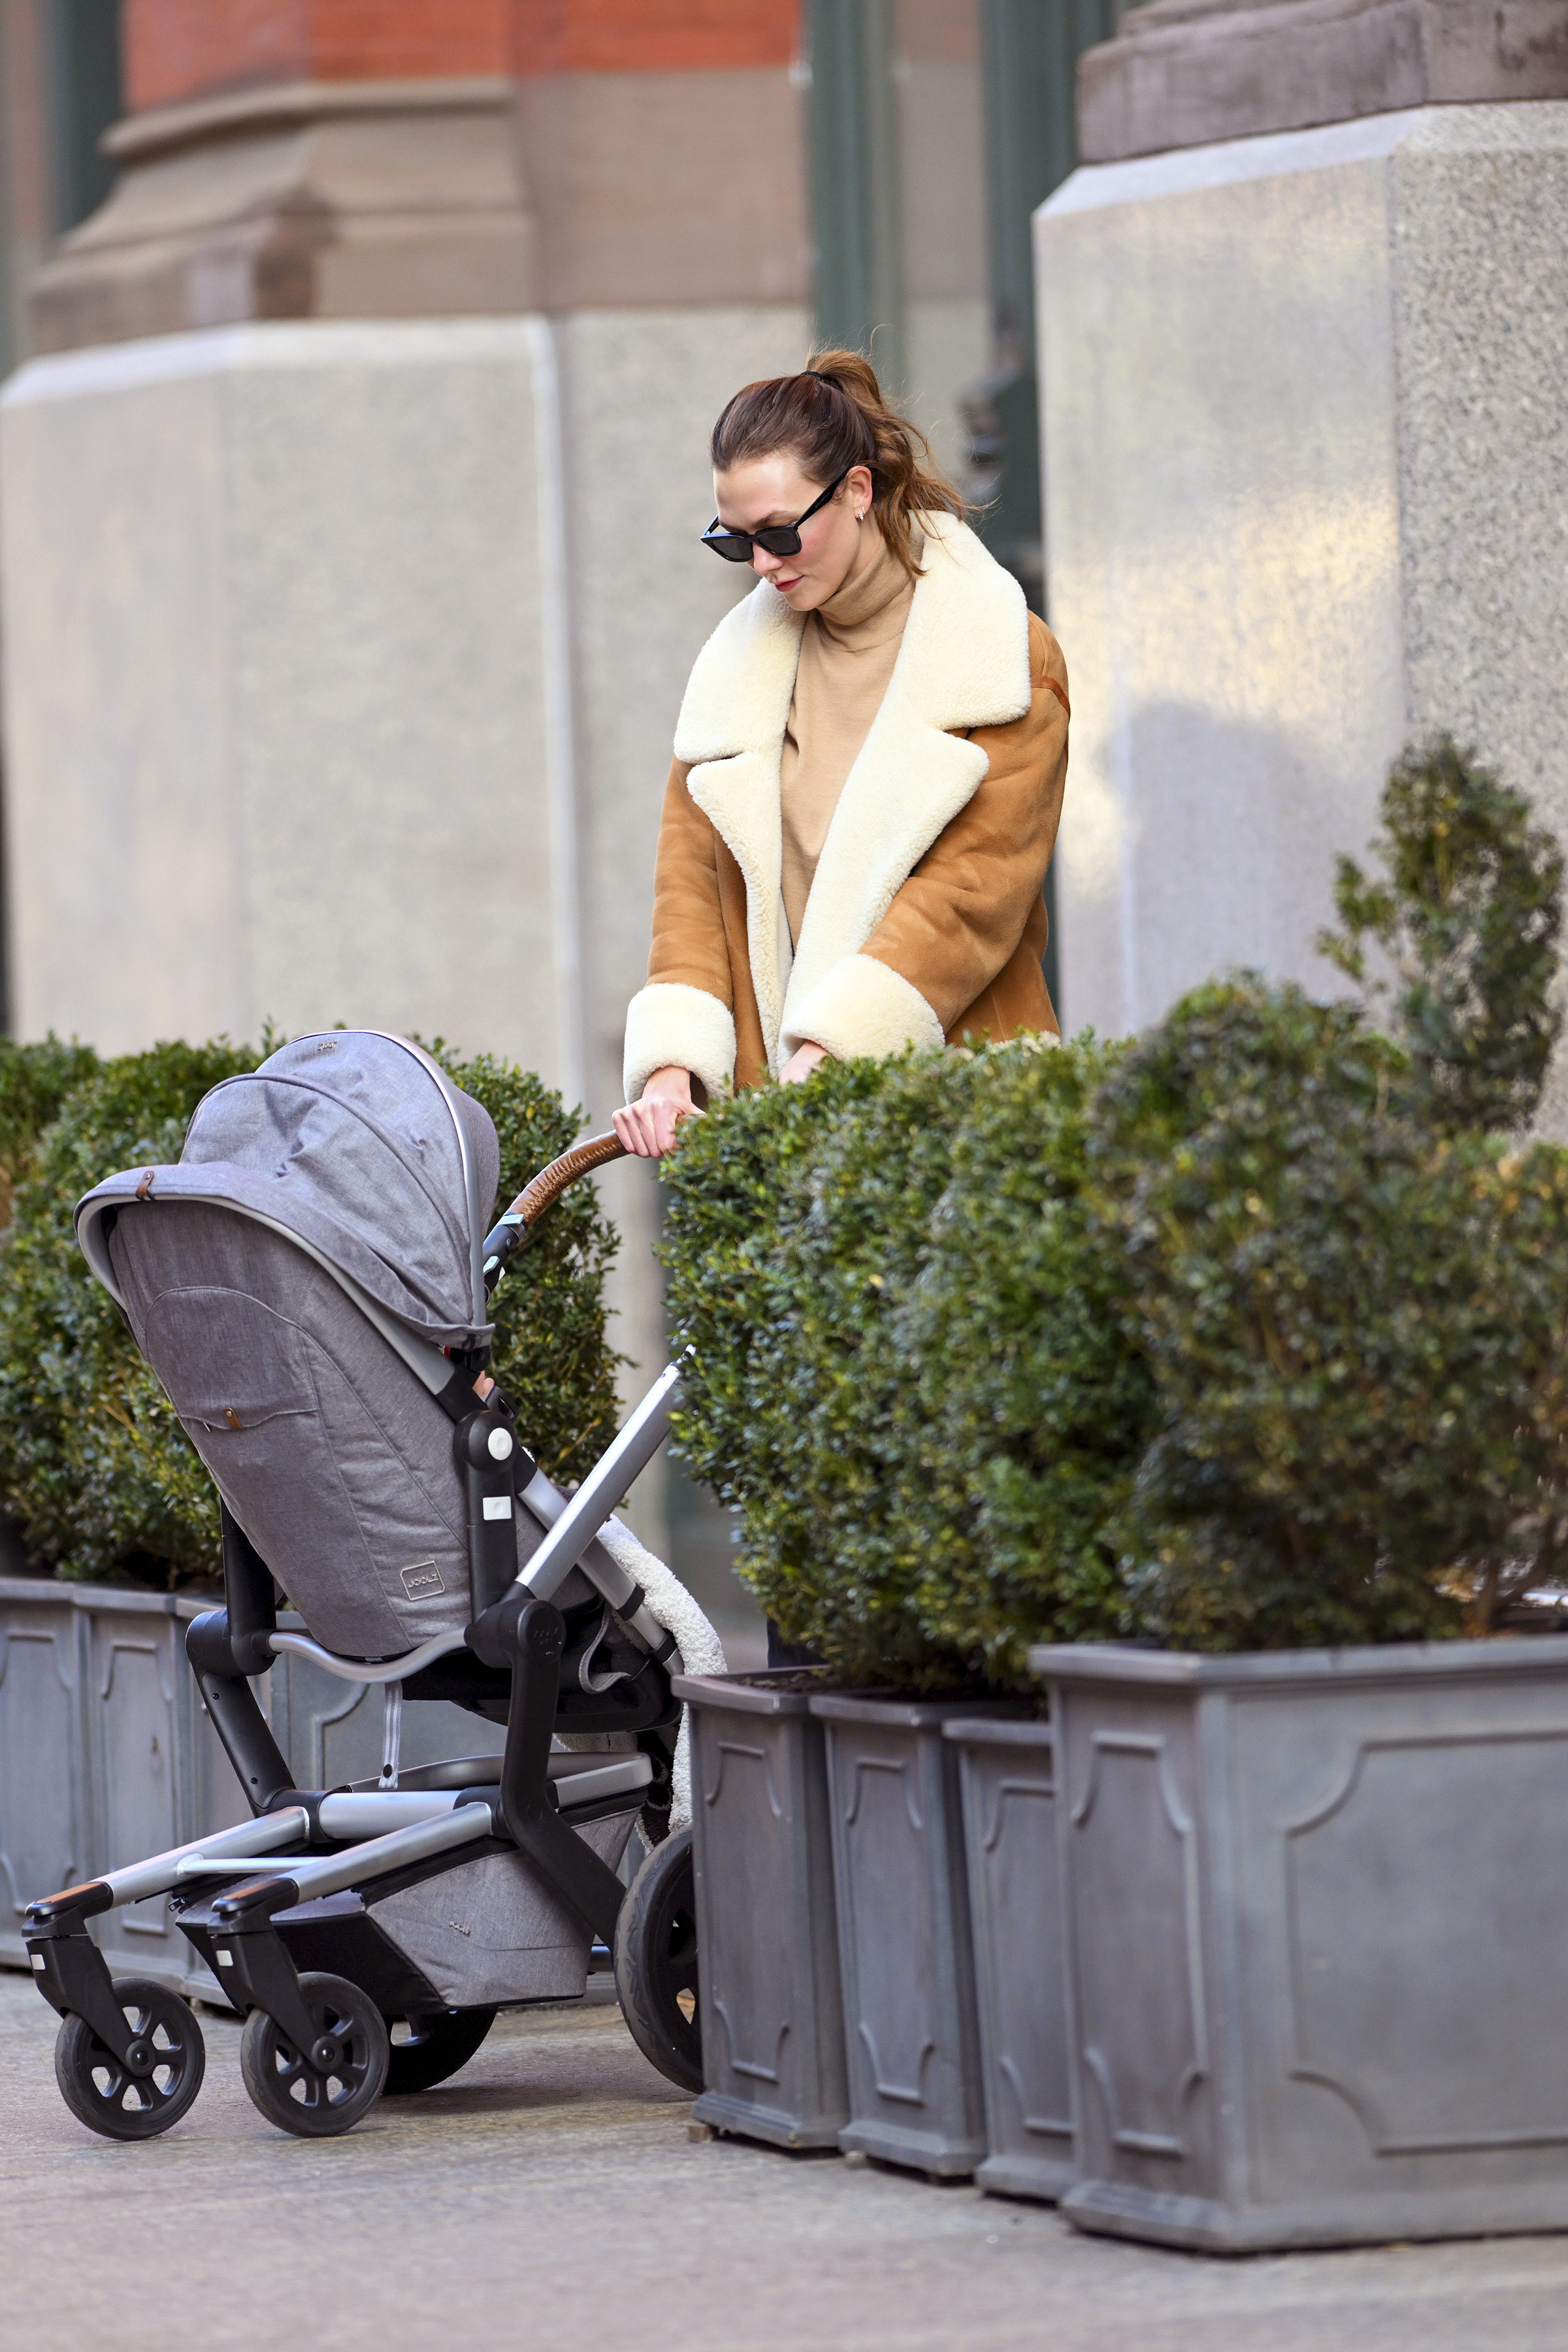 Karlie Kloss fue fotografiada cuando regresaba a su casa en Nueva York luego de haber dado un paseo con su bebé, fruto de su relación con Joshua Kushner. La modelo hizo maniobras con el cochecito para ingresar al edificio en el que vive y saludó con buena predisposición a los fotógrafos que la encontraron